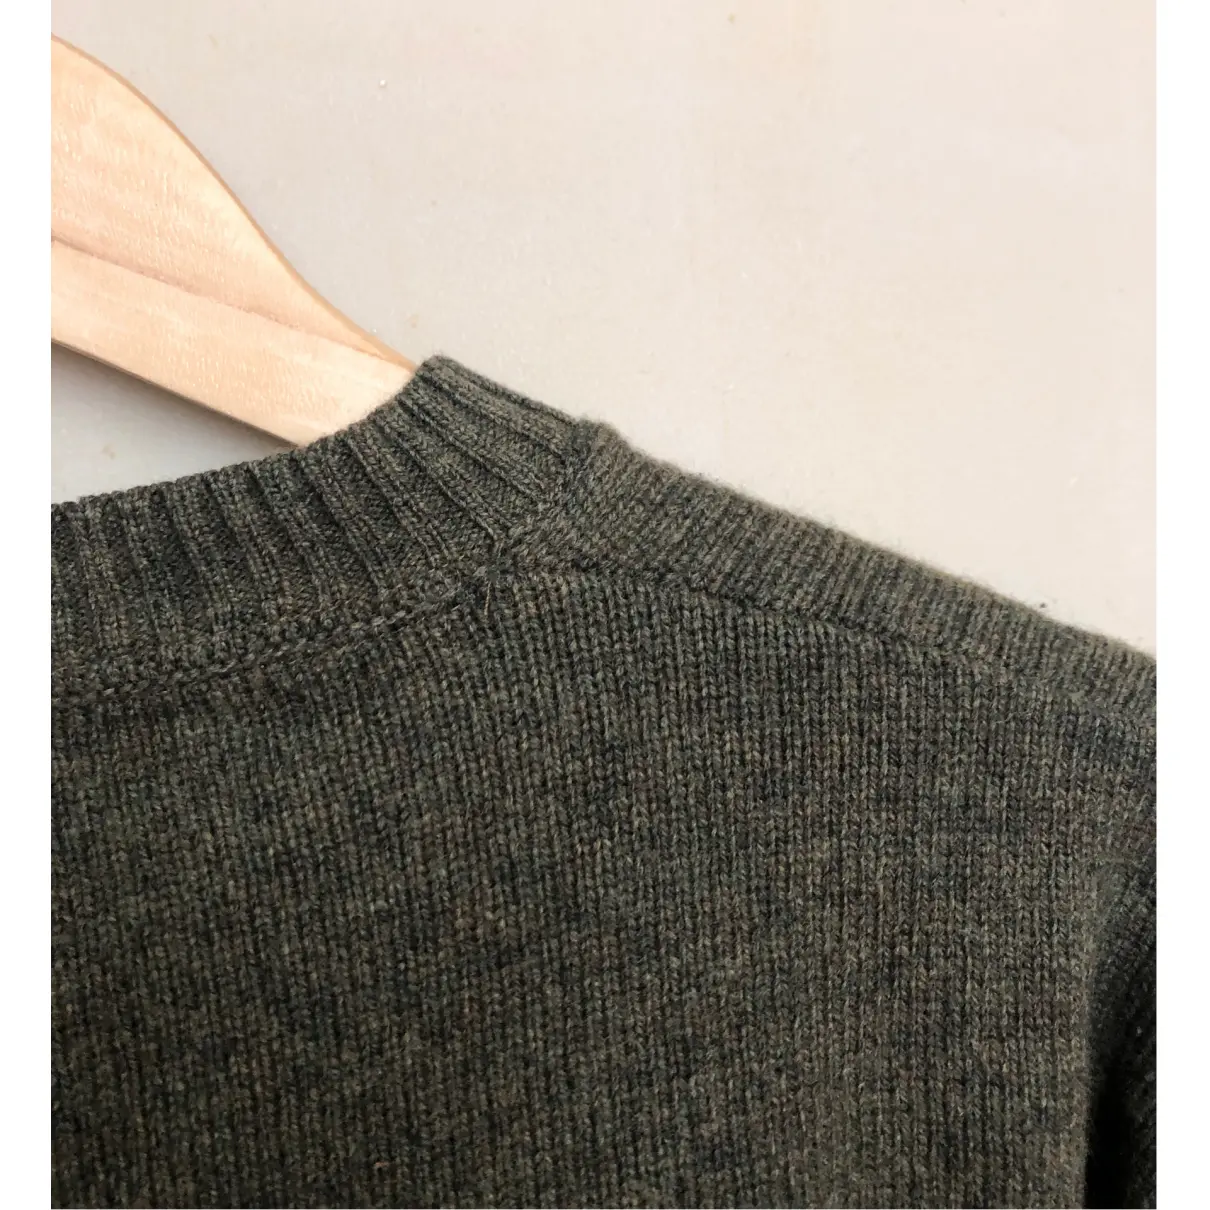 Luxury Burberry Knitwear & Sweatshirts Men - Vintage